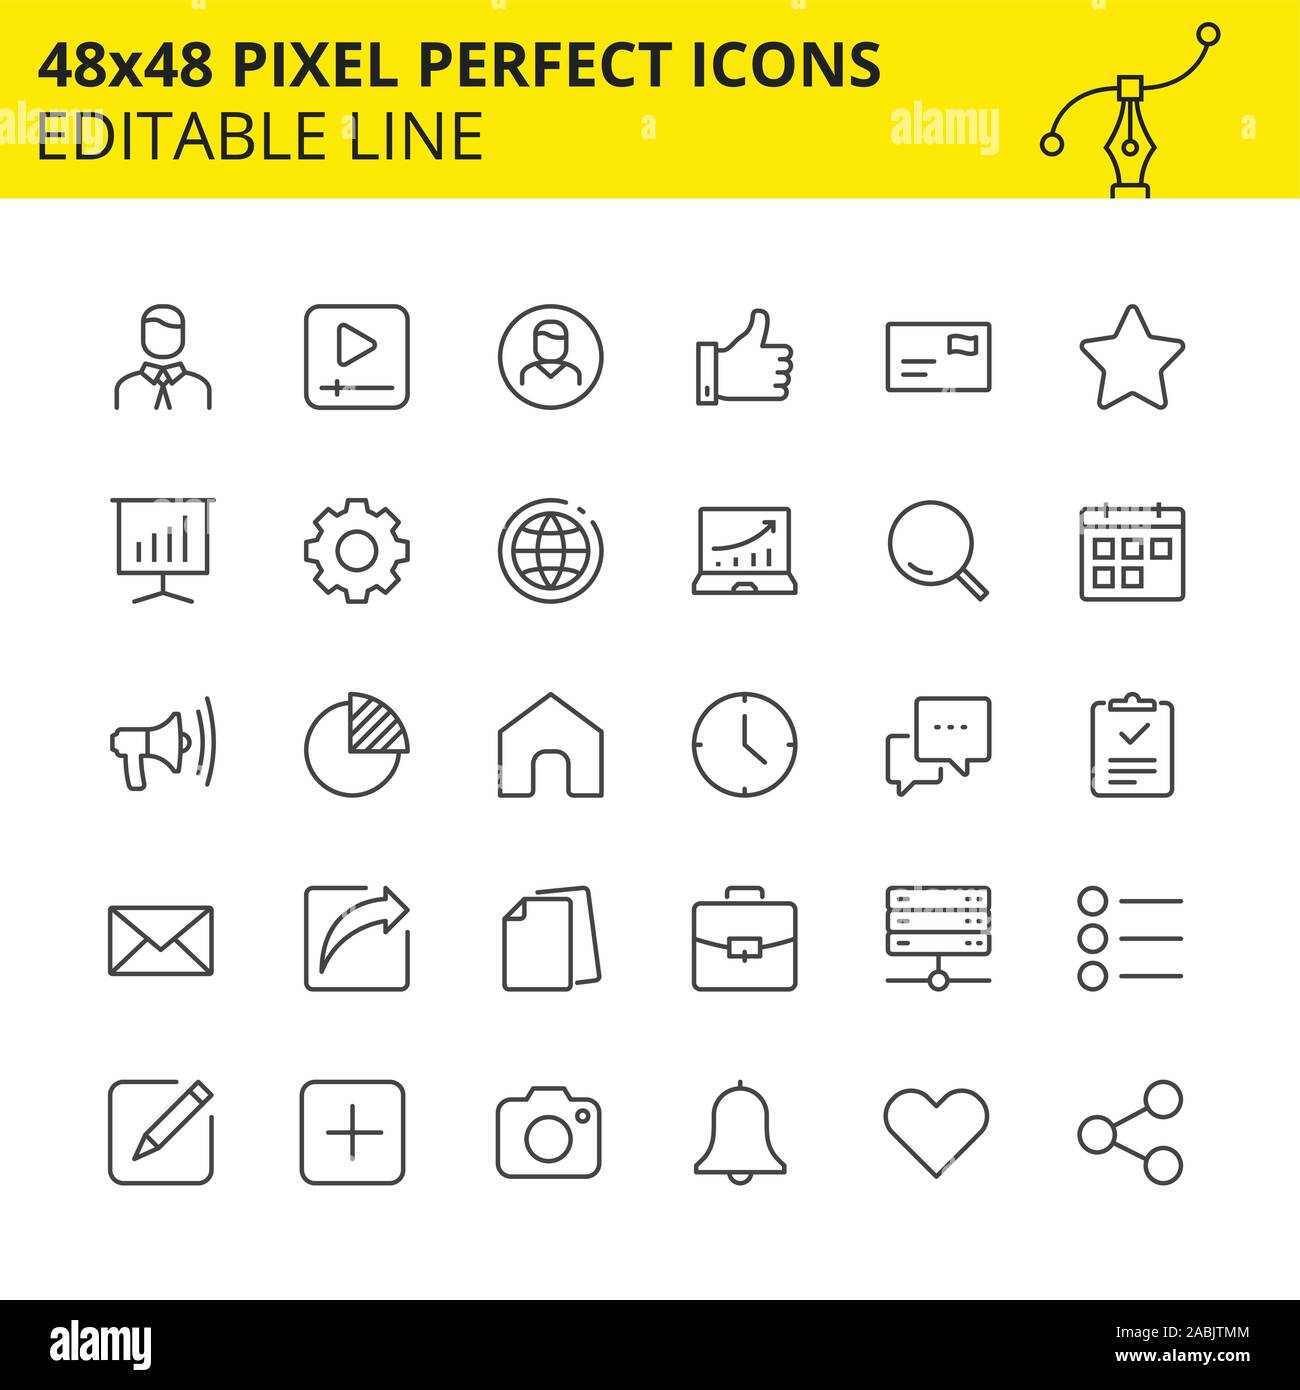 Editable iconos para aplicaciones móviles, sitios Web y otras plataformas que incluye al usuario, como el hogar, notificaciones, etc. Pixel Perfect 48x48 Ilustración del Vector